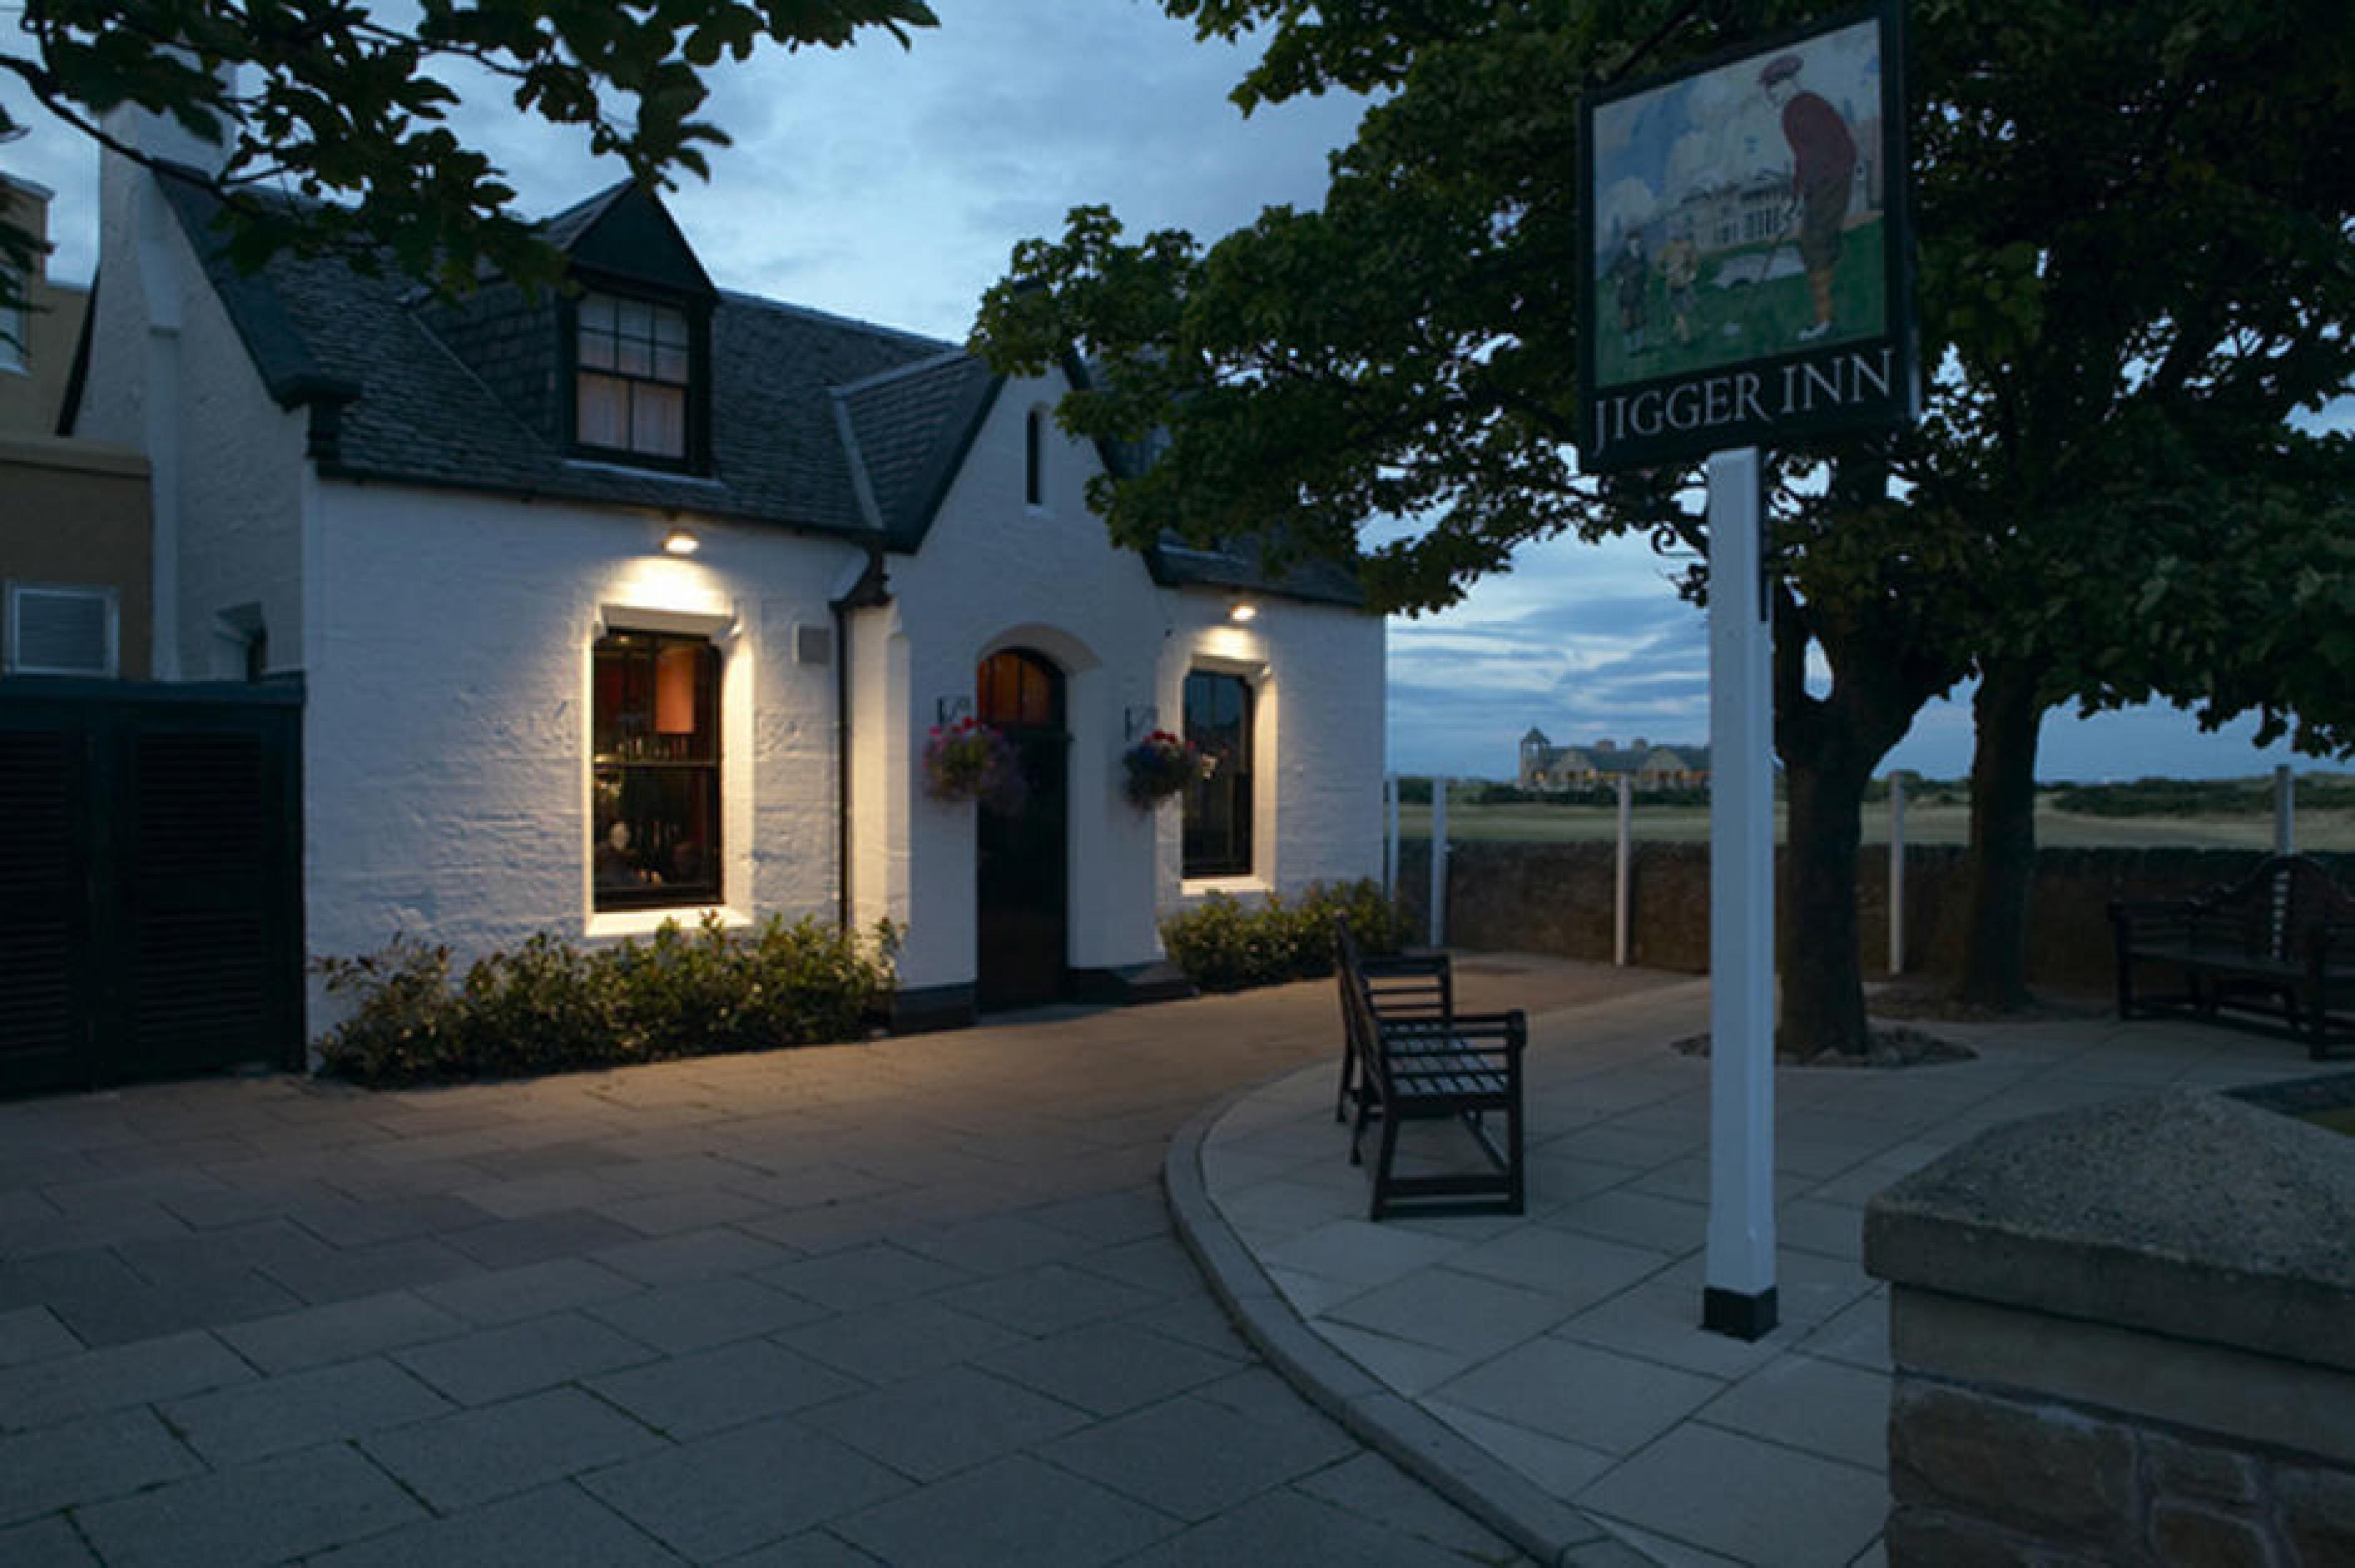 Exterior - The Jigger Inn, St Andrews, Scotland